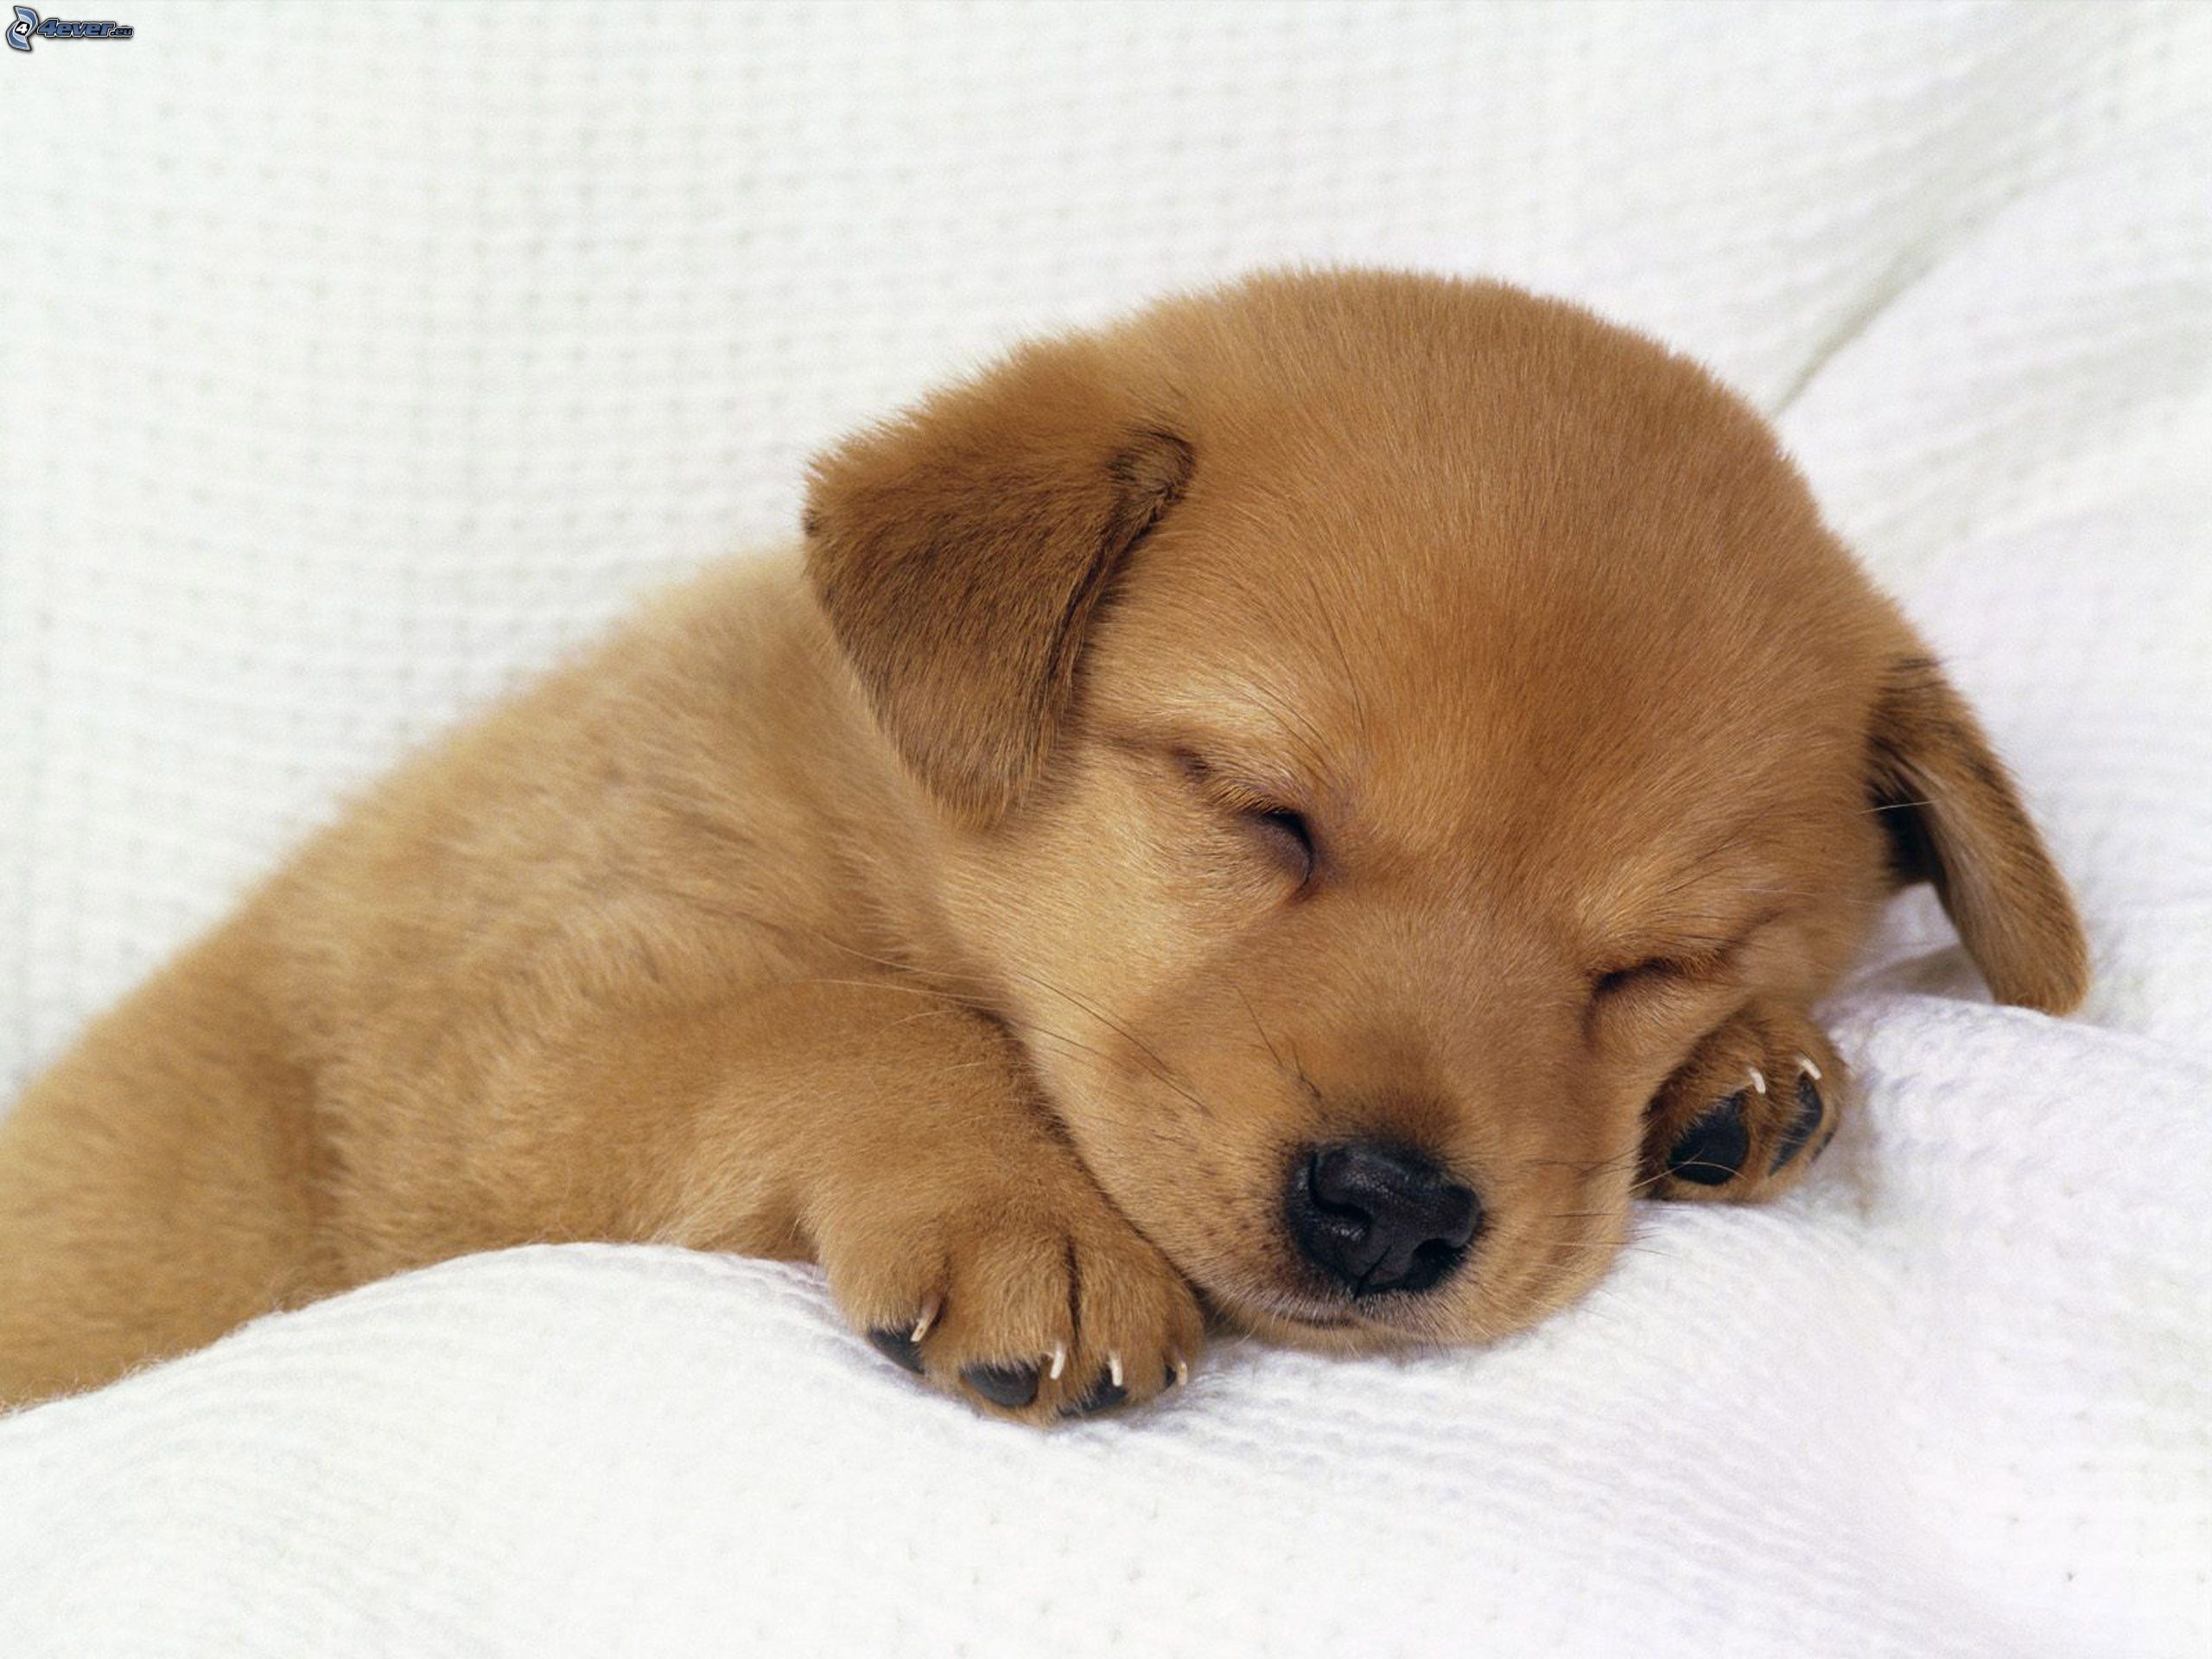 2560x1920 Cute Sleeping Golden Retriever Puppies - wallpaper.